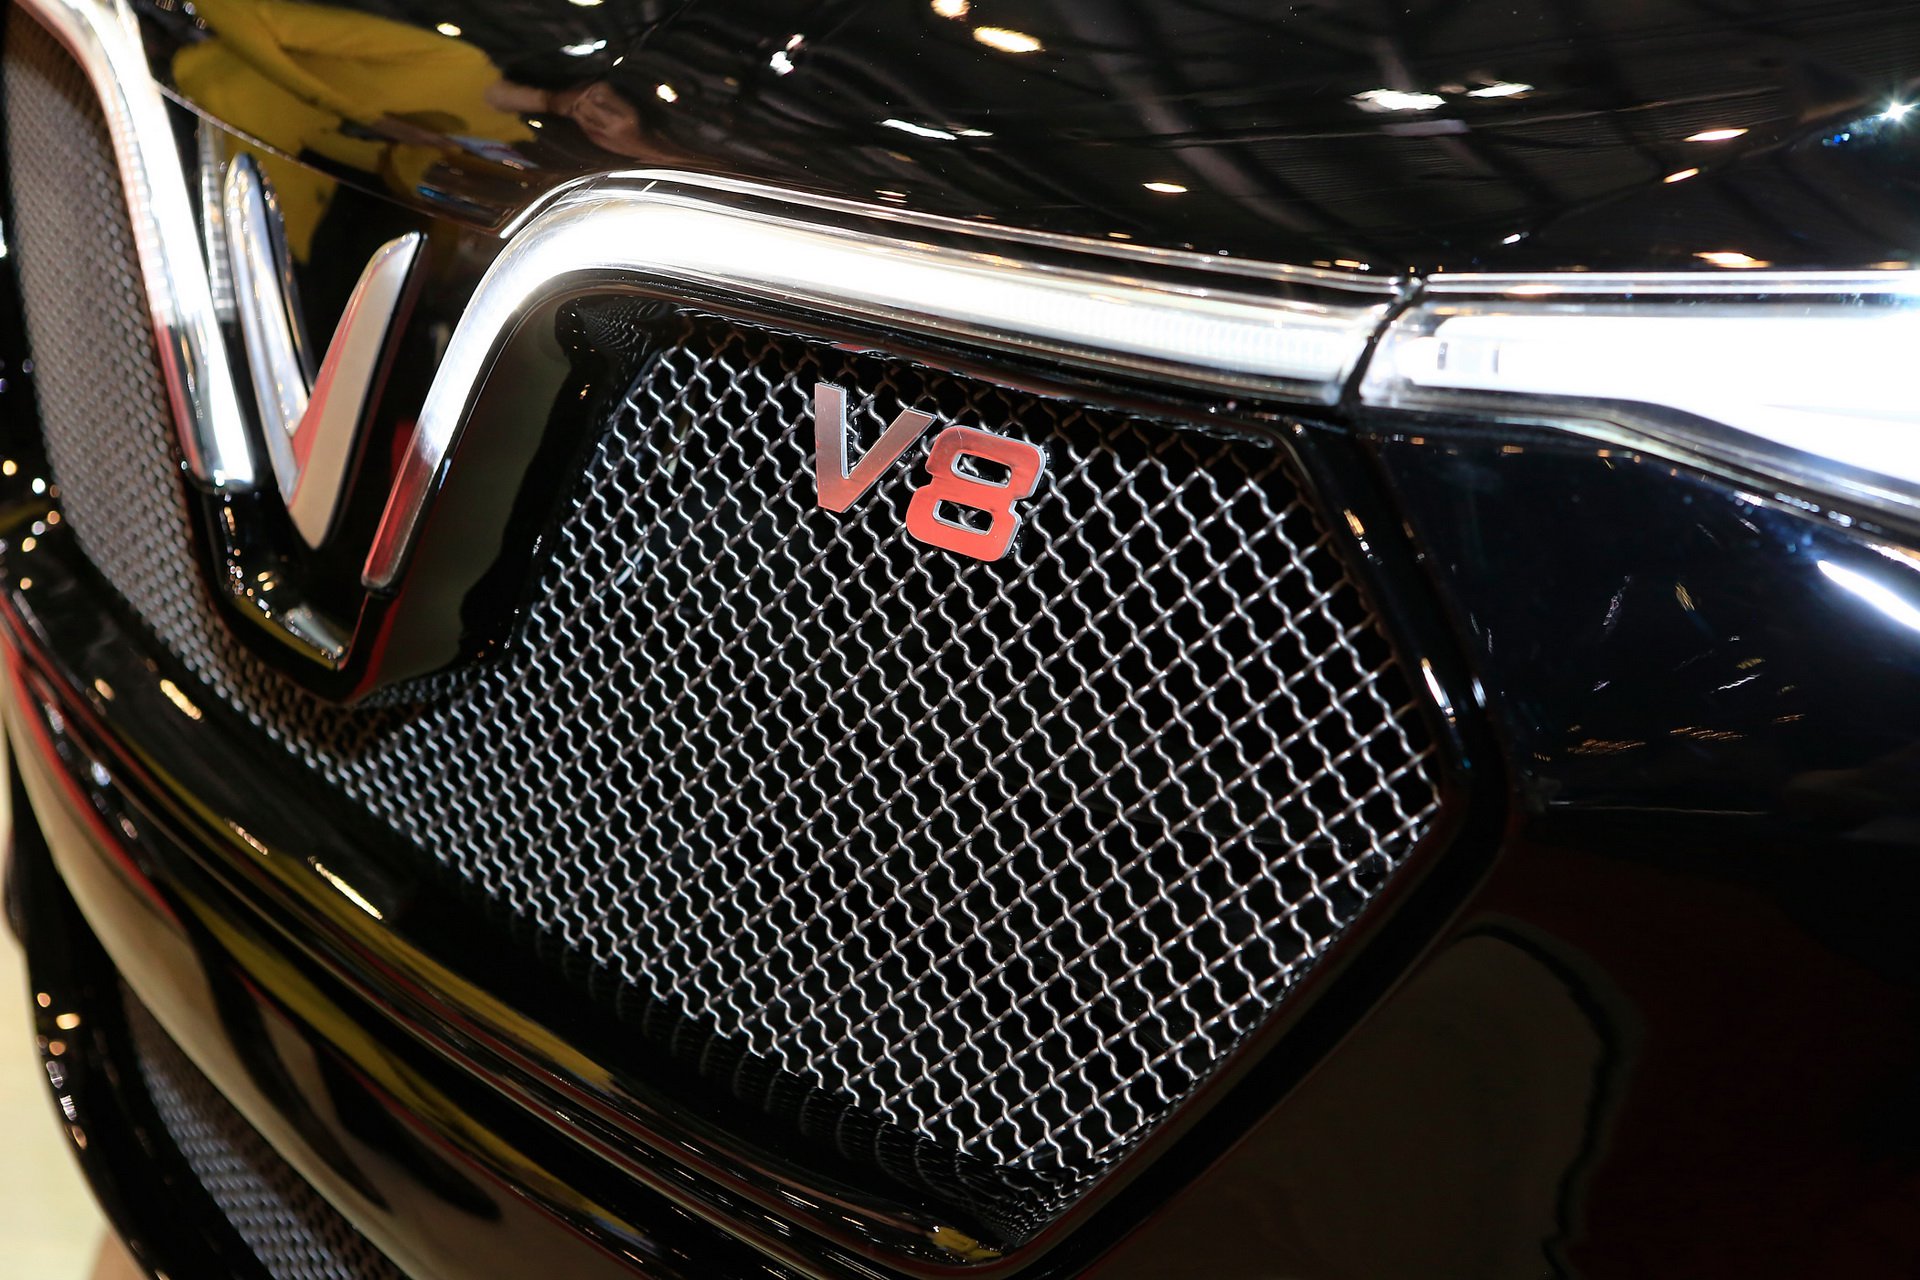 Berita, harga Vinfast Lux V8: Geneva Motor Show 2019 : Vinfast Lux V8, SUV Vietnam Dengan tenaga 455 hp